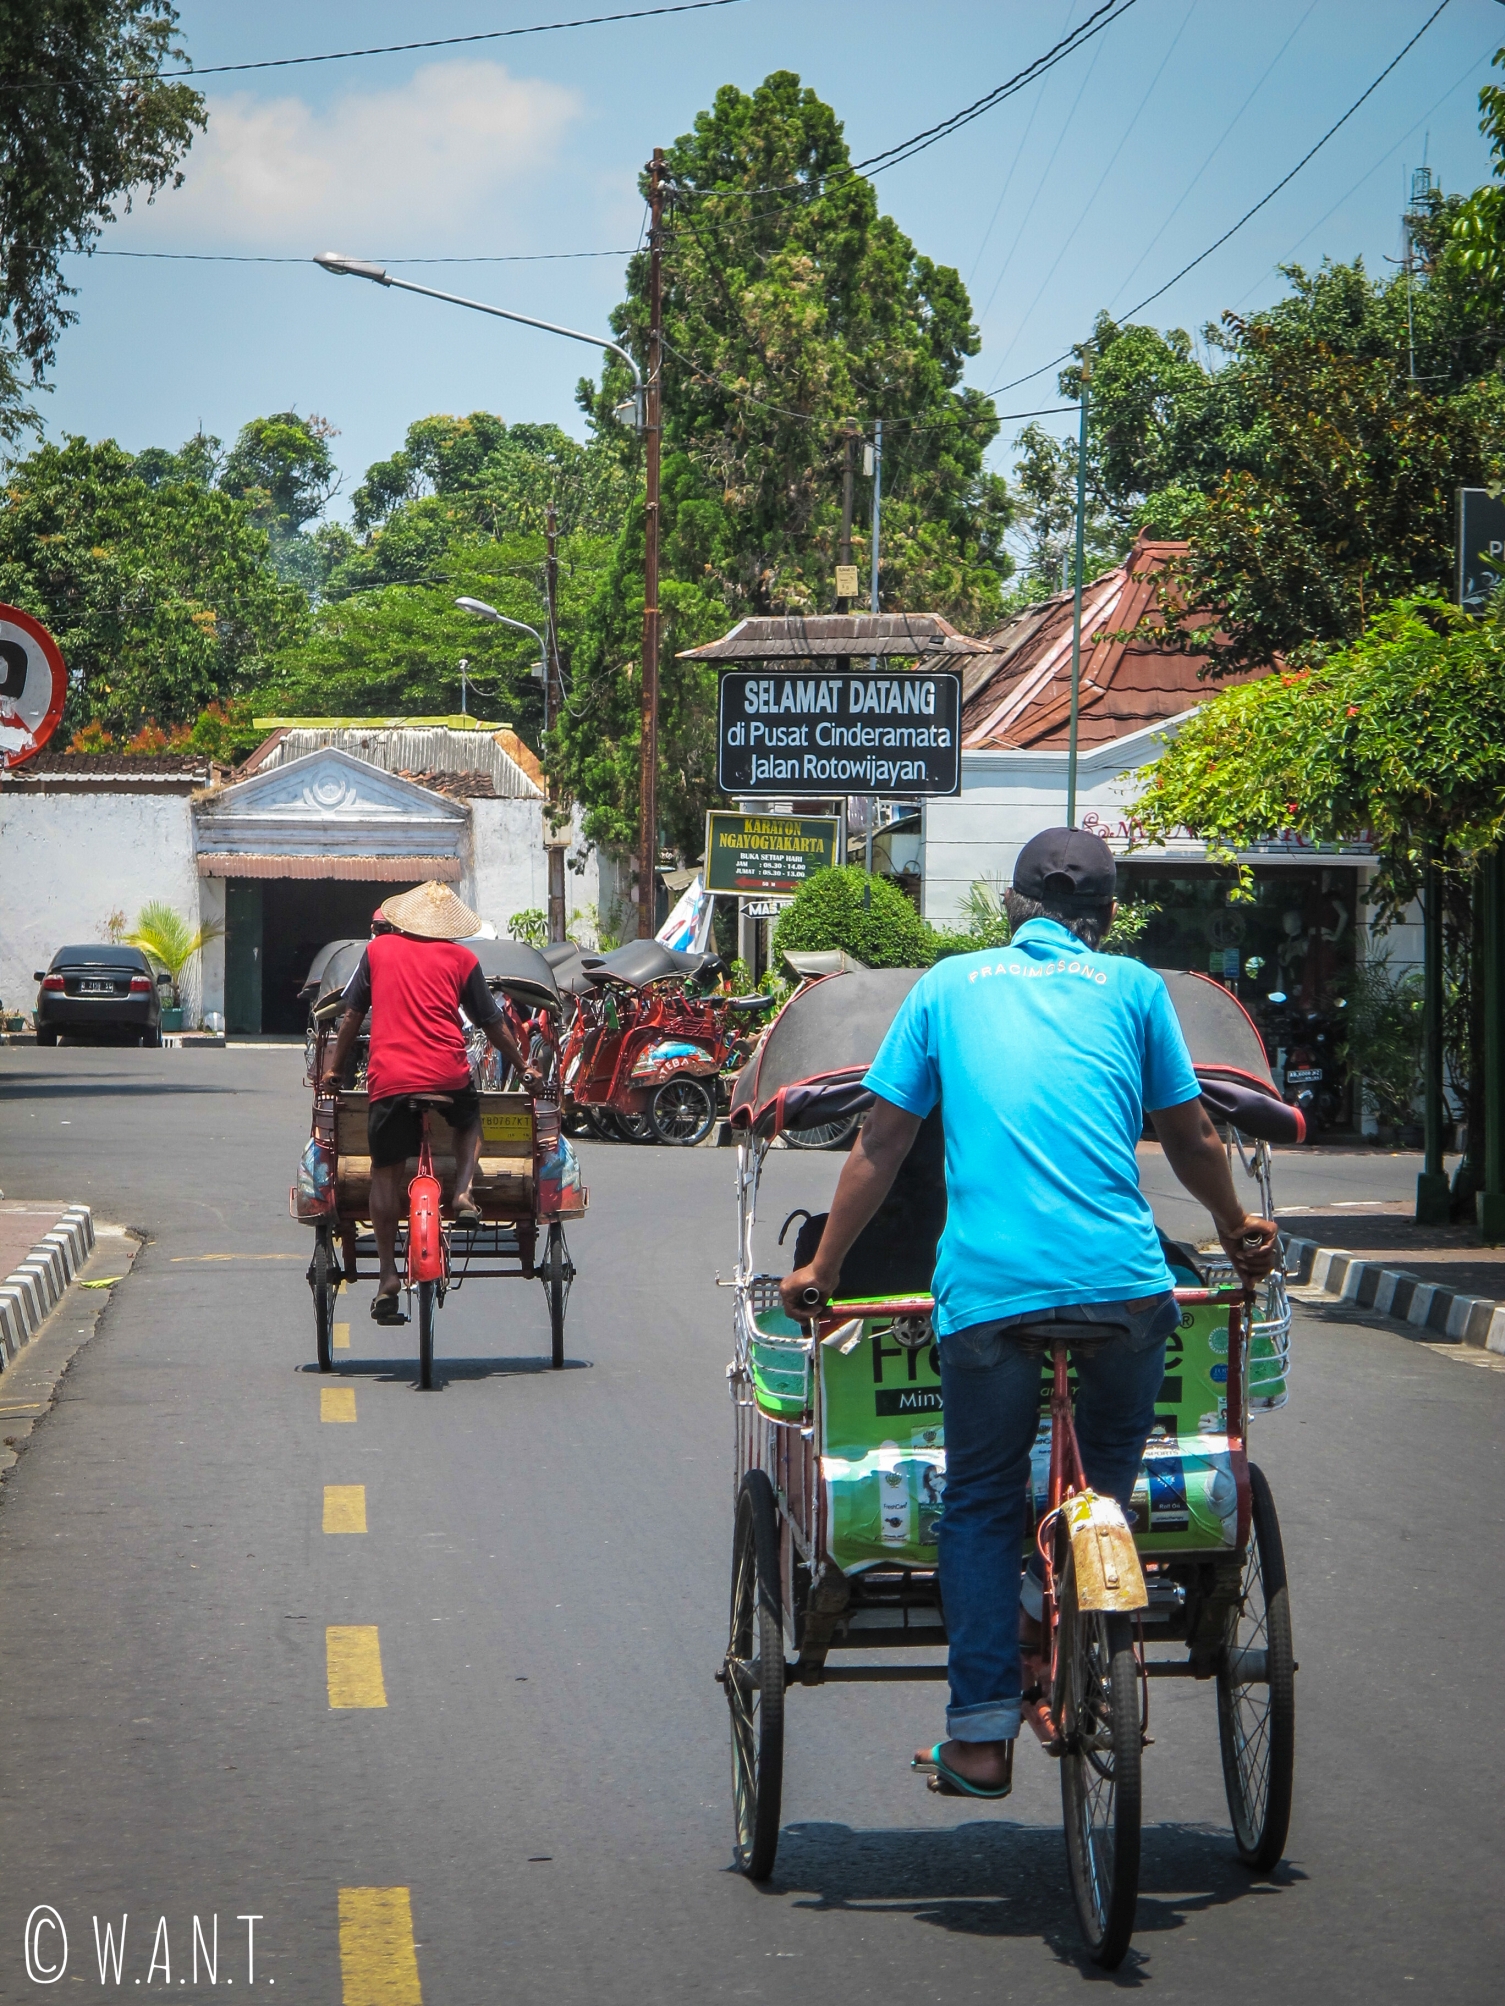 Le becak est un moyen de déplacement spécifique à l'île de Java